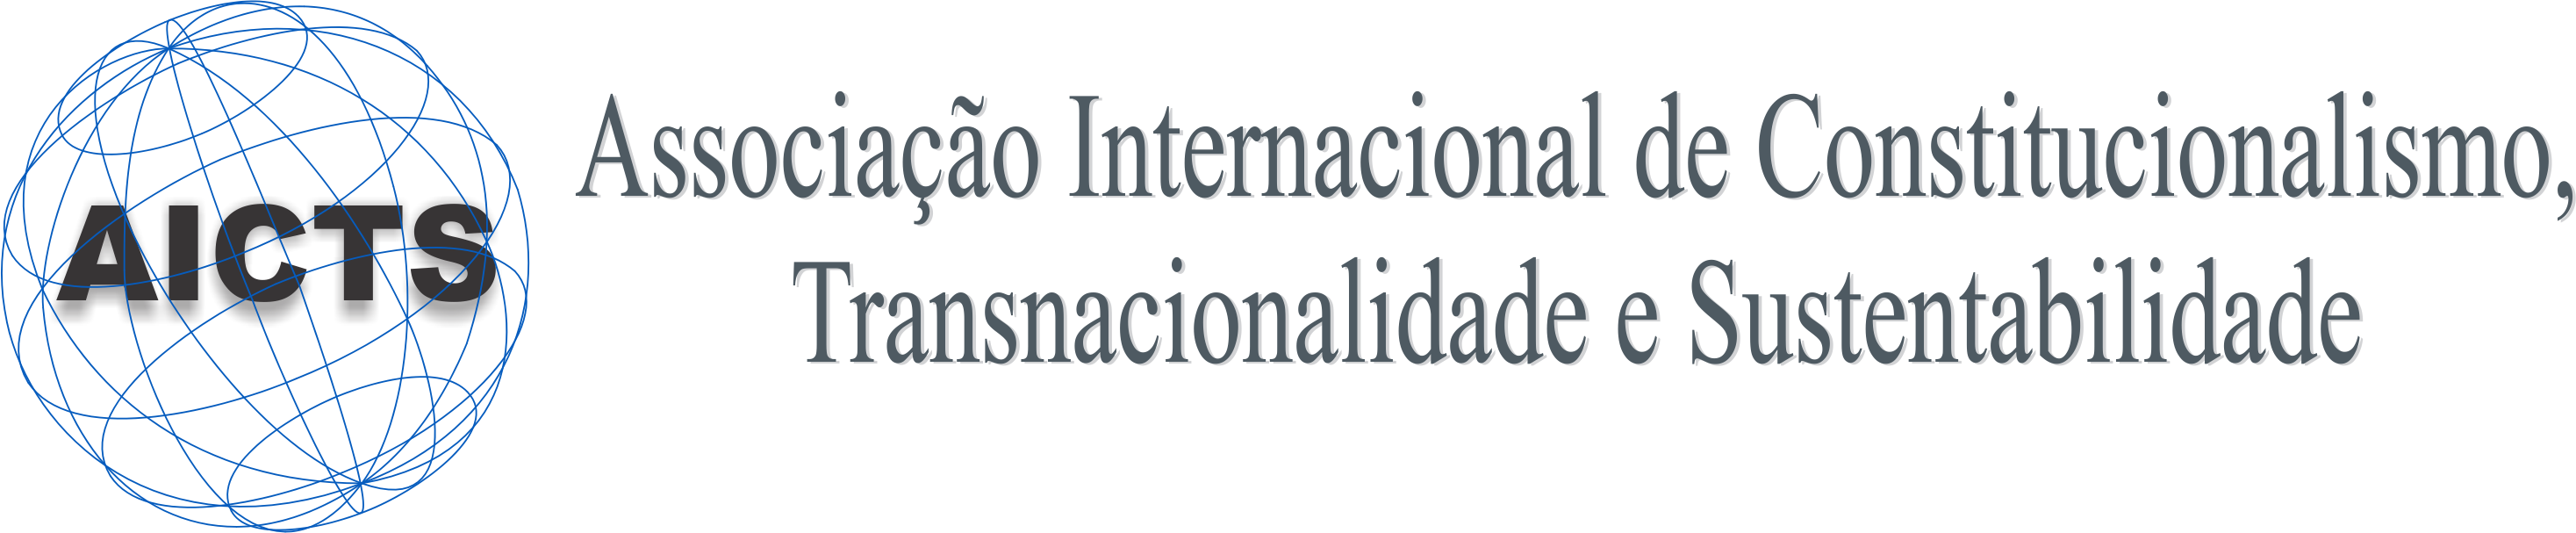 1 - Banner  Associação Internacional.png